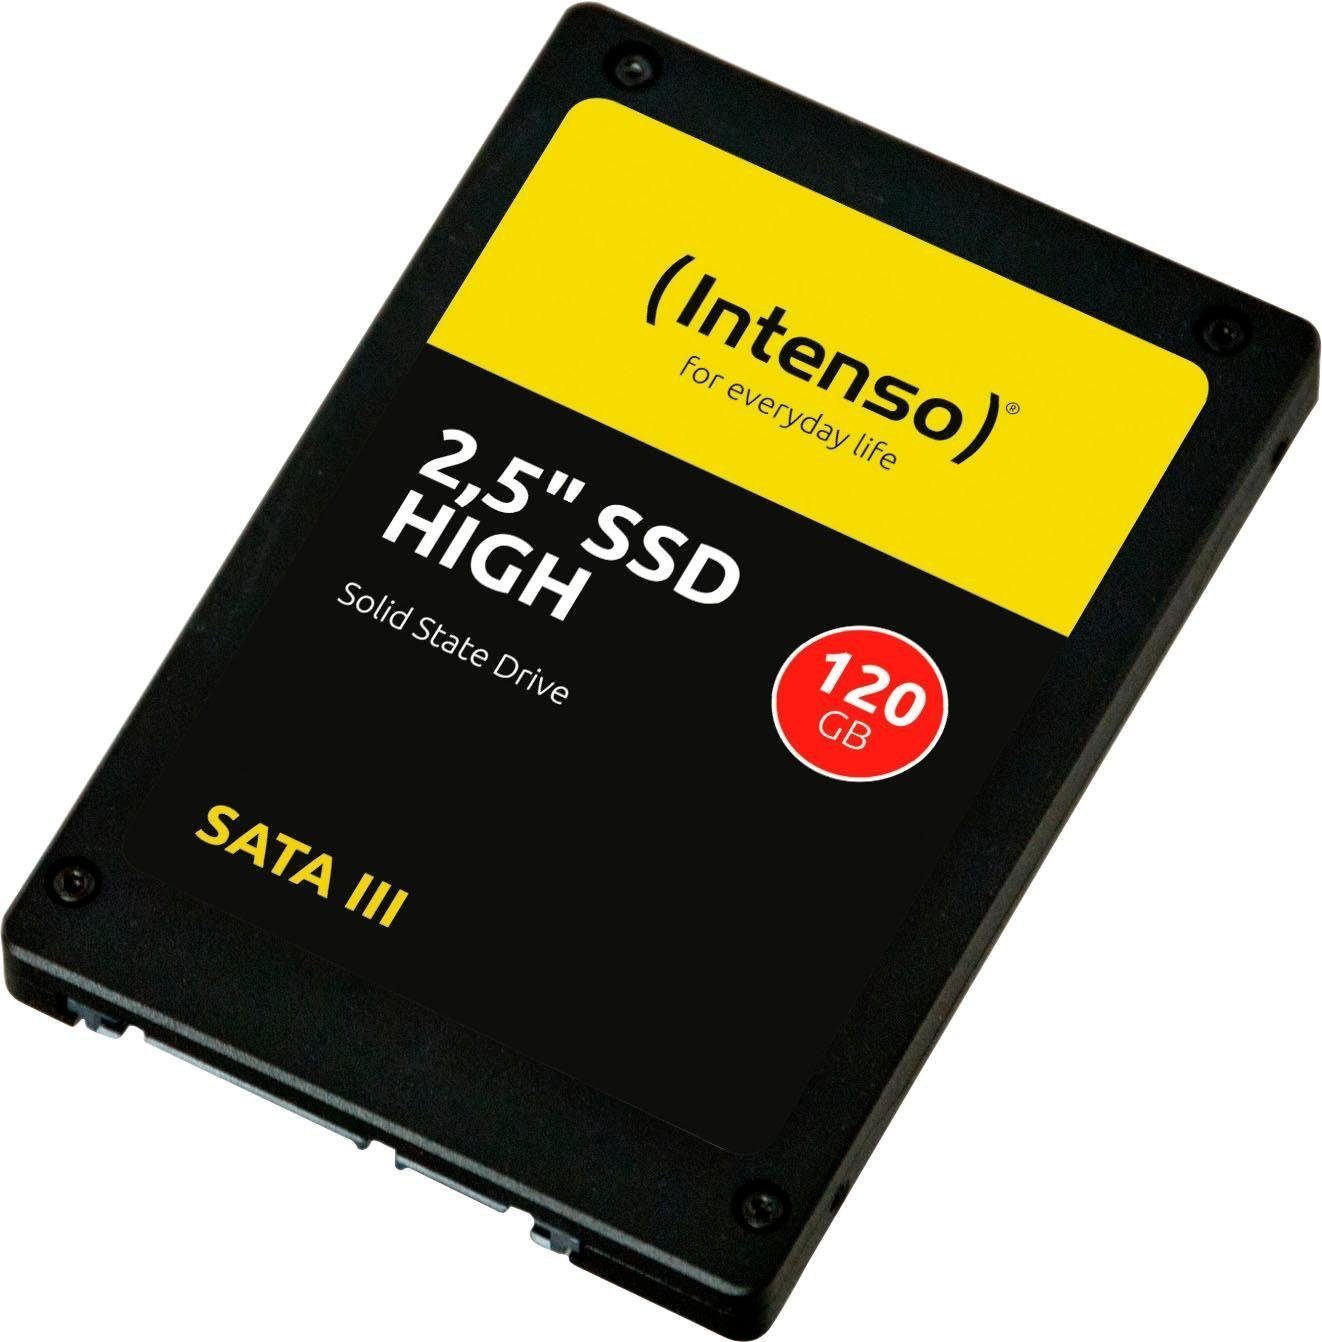 SSD MB/S 480 interne 2,5" 520 Intenso Schreibgeschwindigkeit MB/S GB) Lesegeschwindigkeit, (120 HIGH